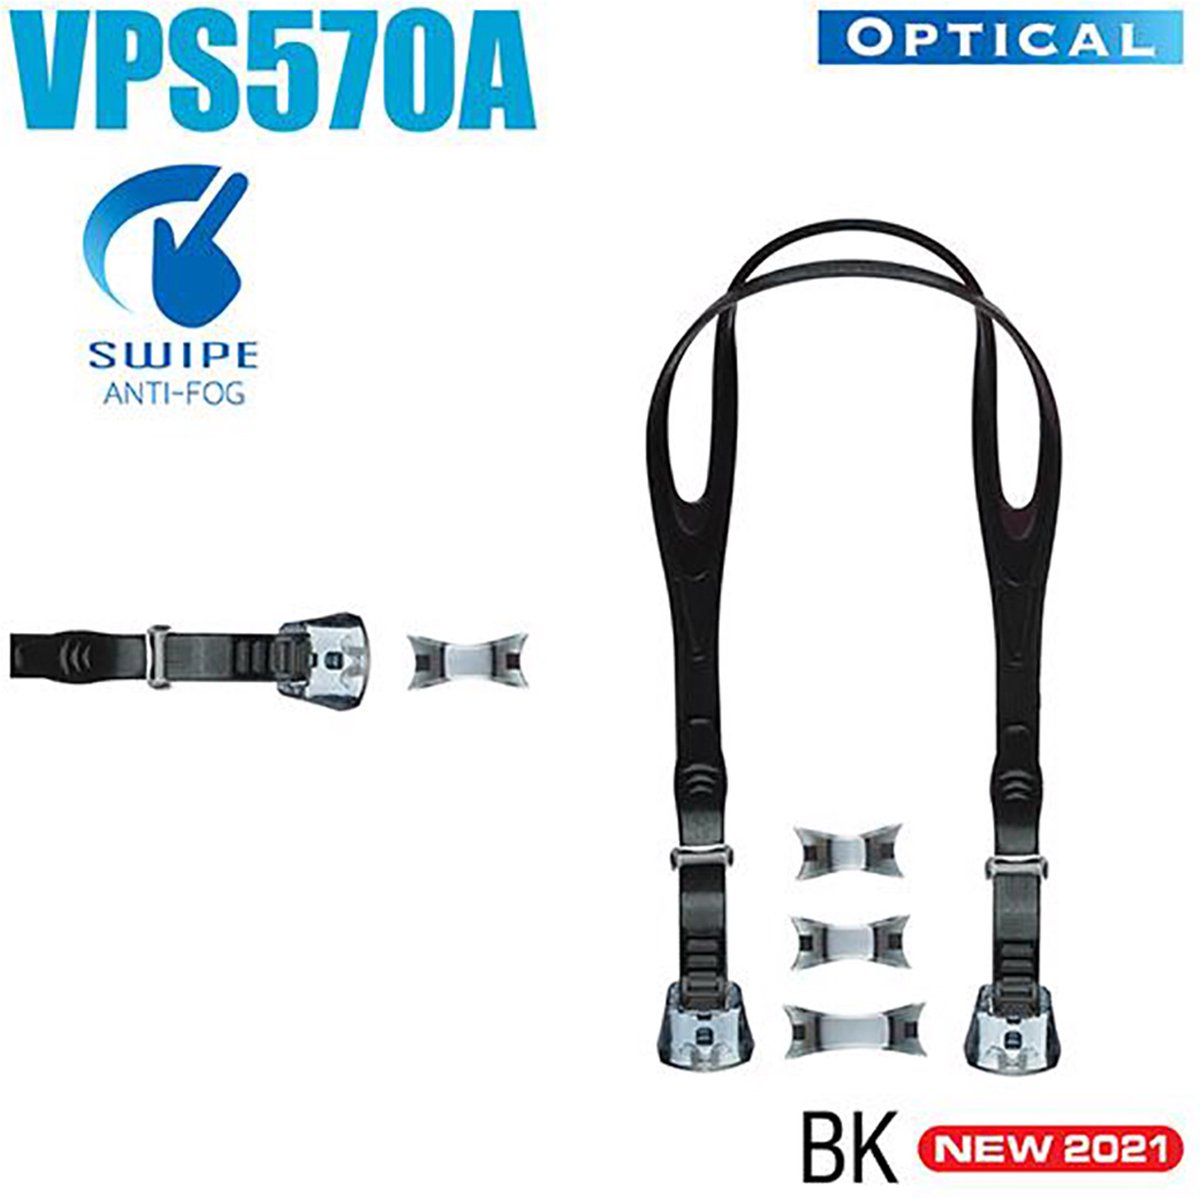 VIEW zwembril strap kit VPS570A kleur zwart